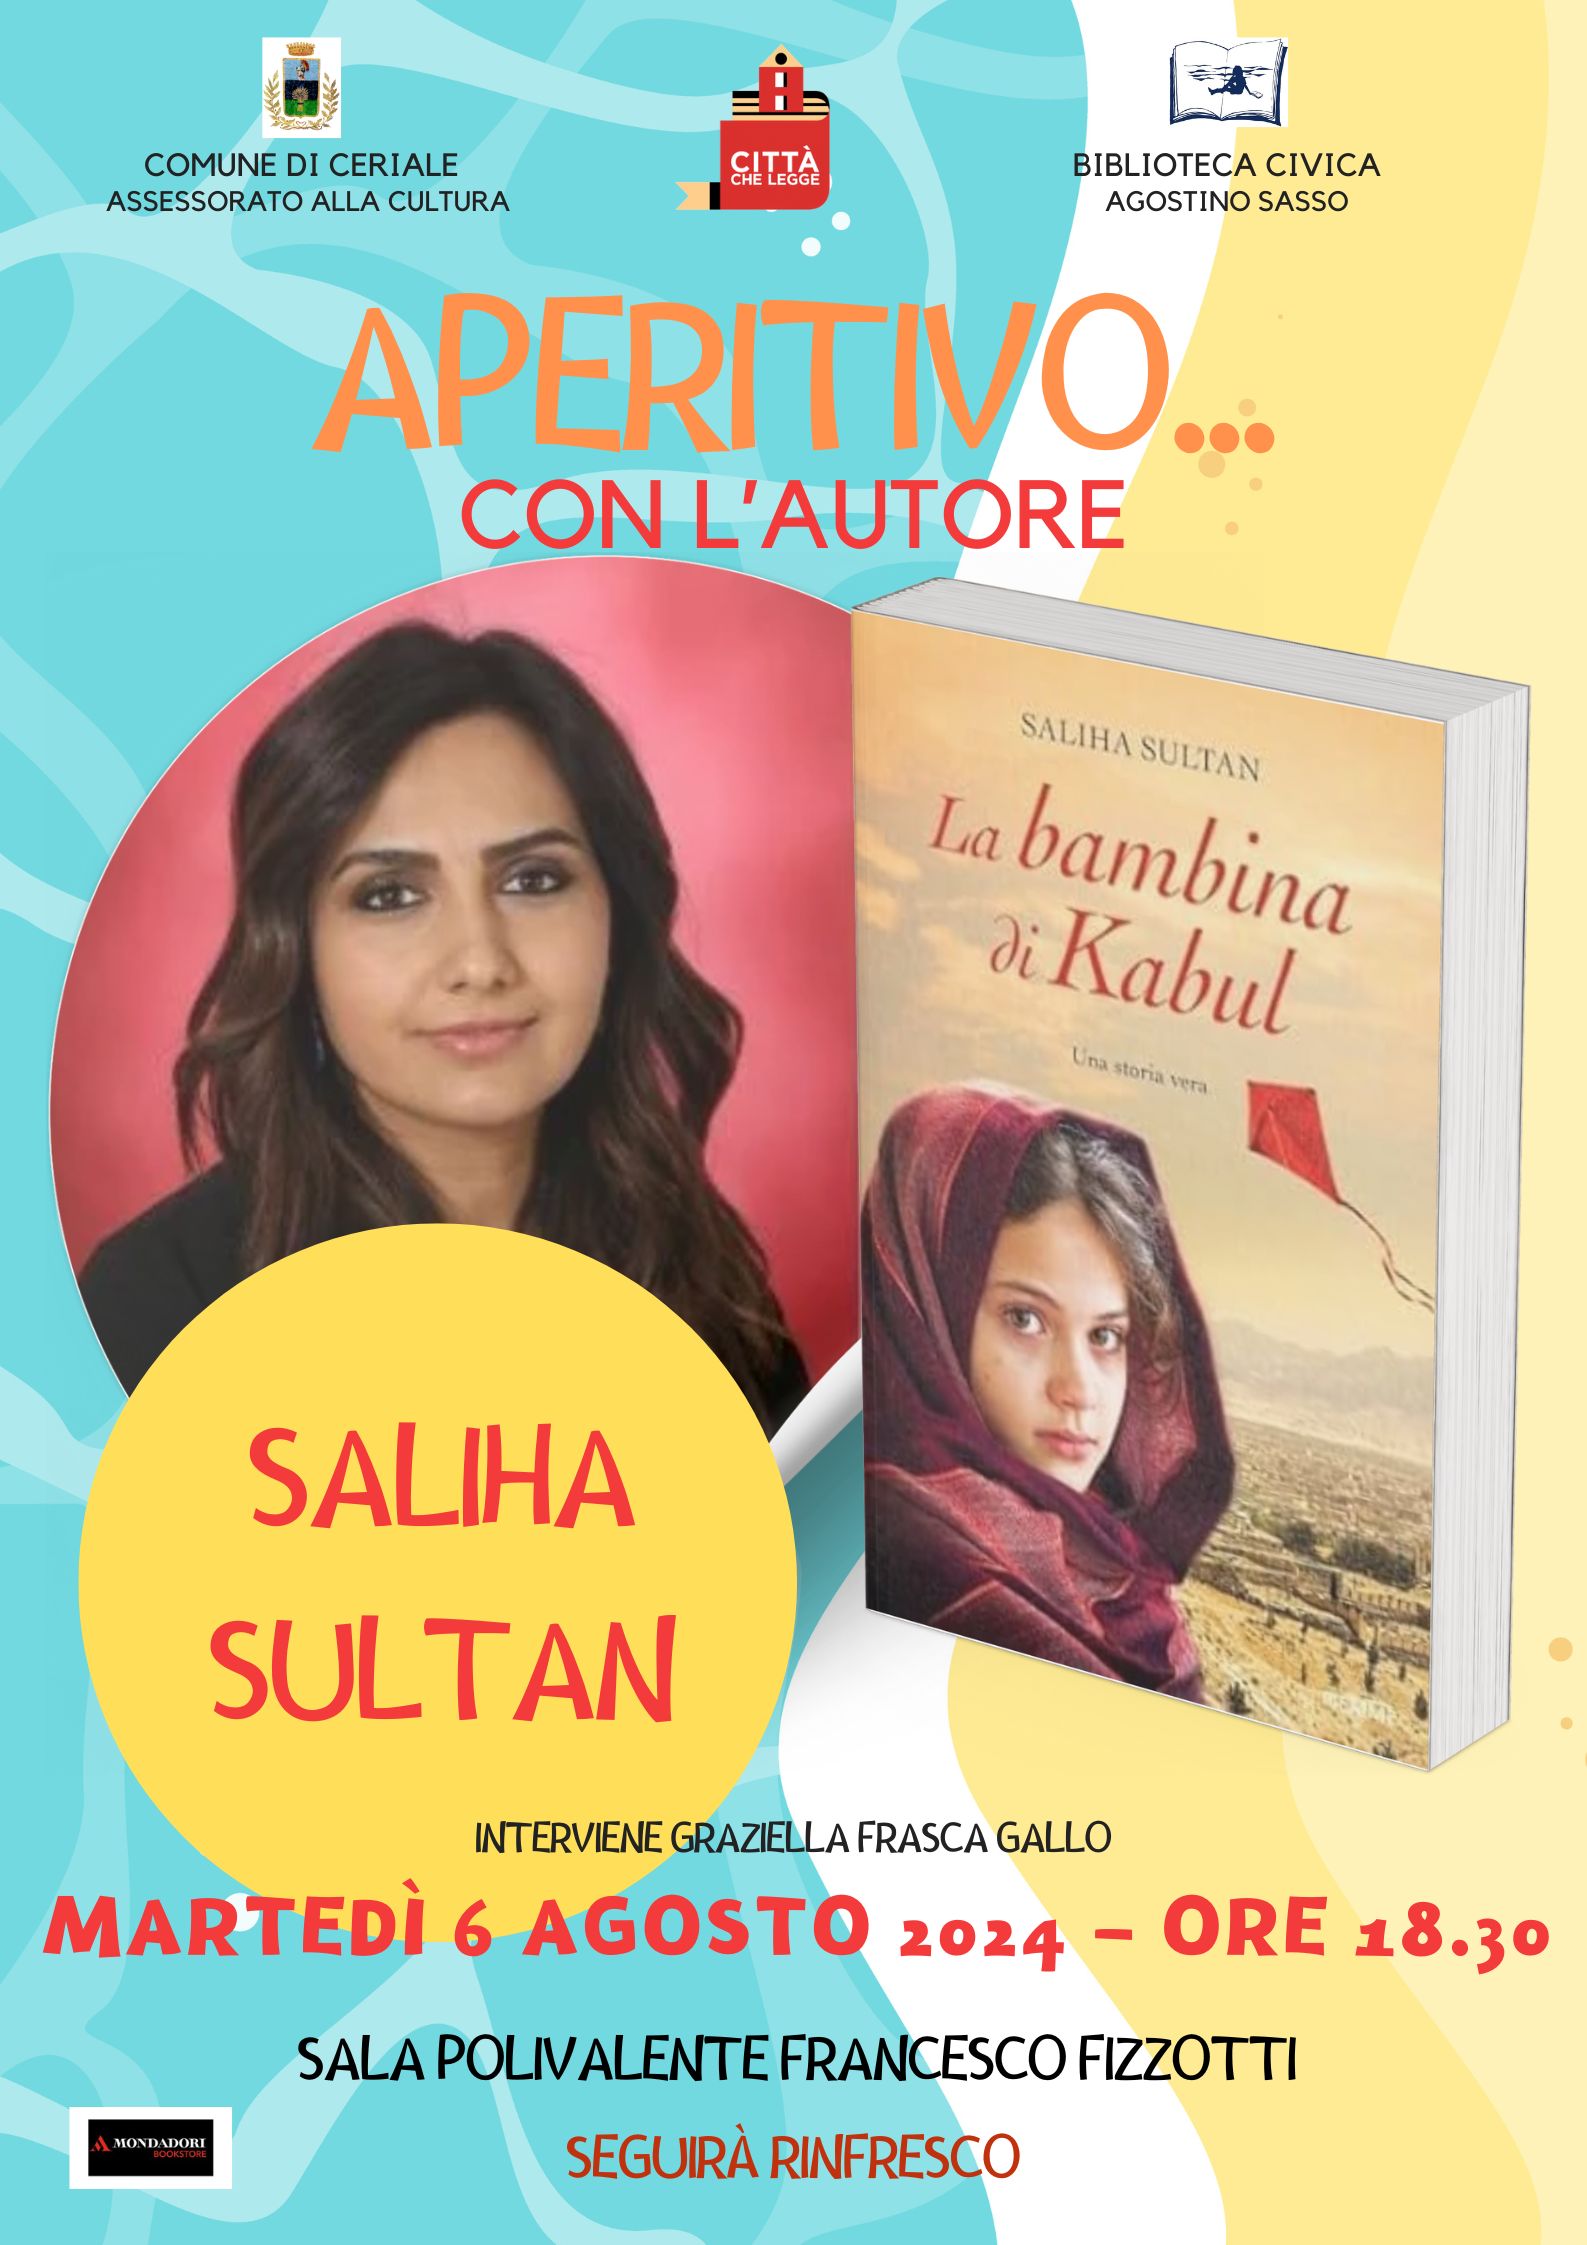 Aperitivo D'autore - Saliha Sultan presenta il libro 